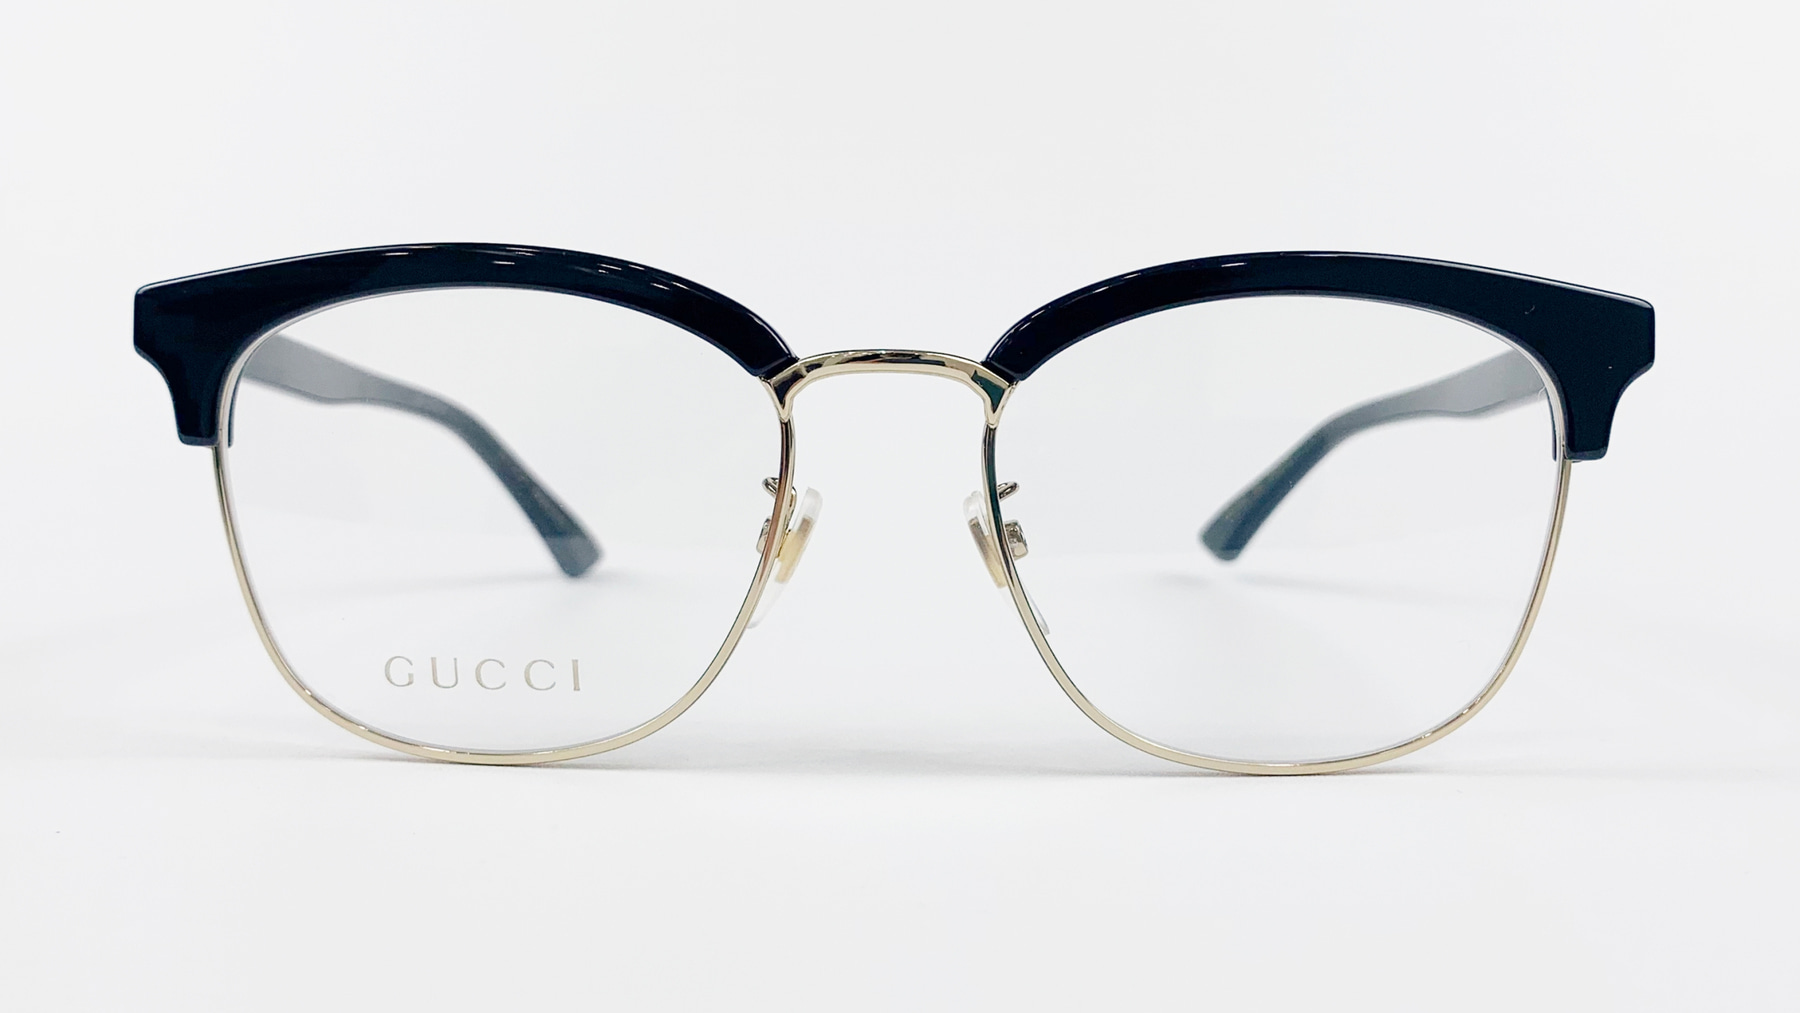 GUCCI GG0409O, Korean glasses, sunglasses, eyeglasses, glasses